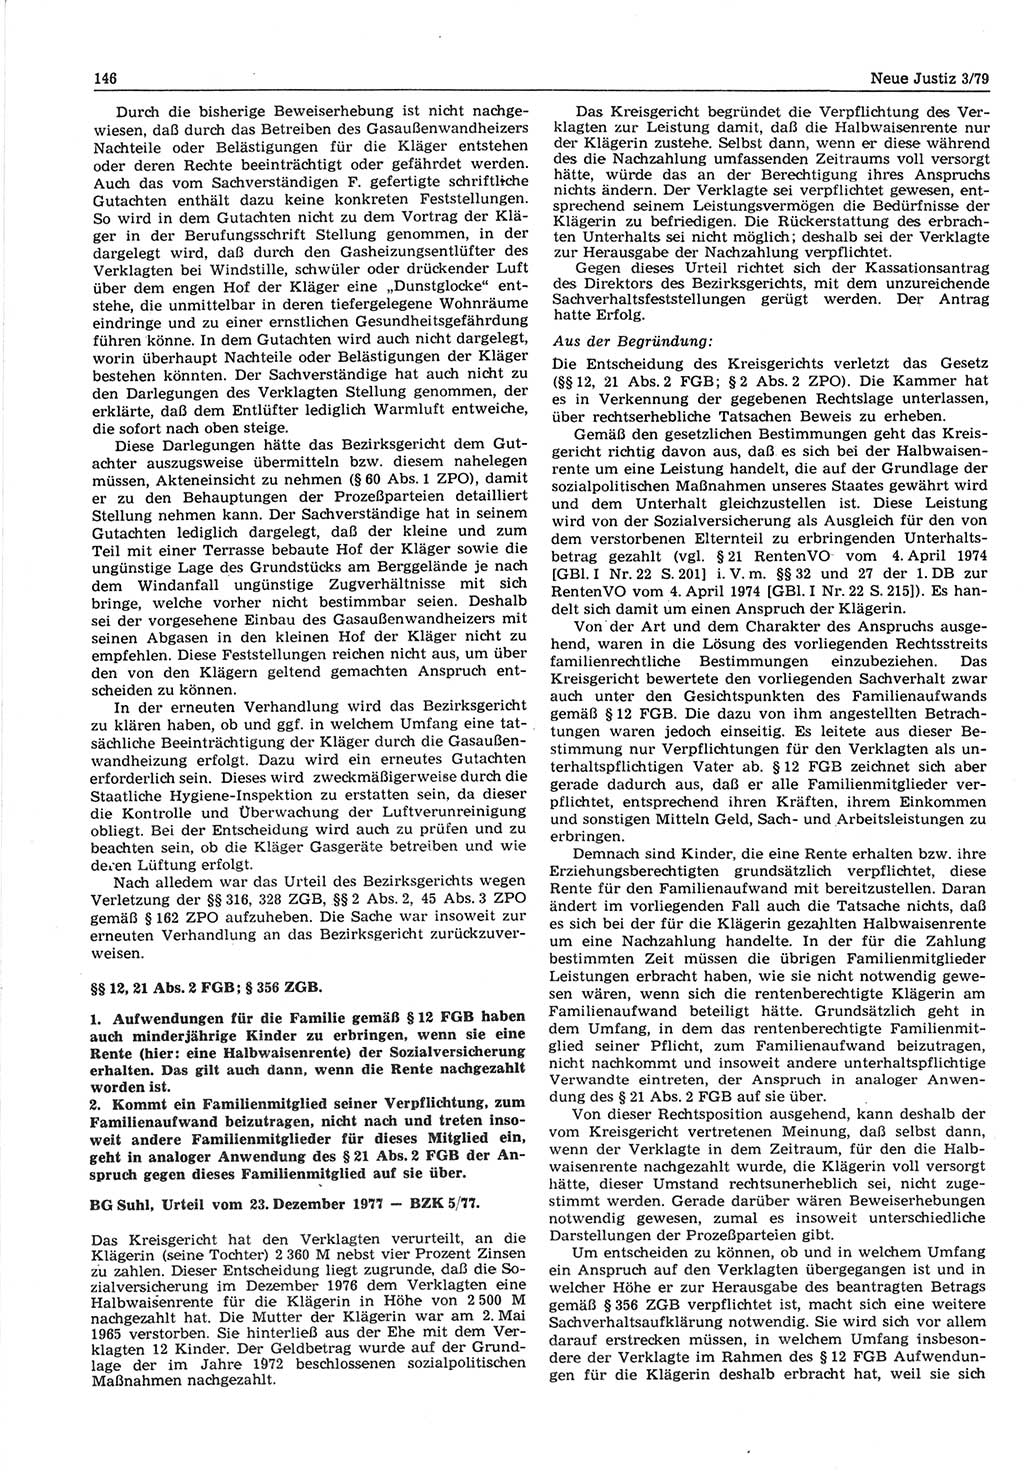 Neue Justiz (NJ), Zeitschrift für sozialistisches Recht und Gesetzlichkeit [Deutsche Demokratische Republik (DDR)], 33. Jahrgang 1979, Seite 146 (NJ DDR 1979, S. 146)